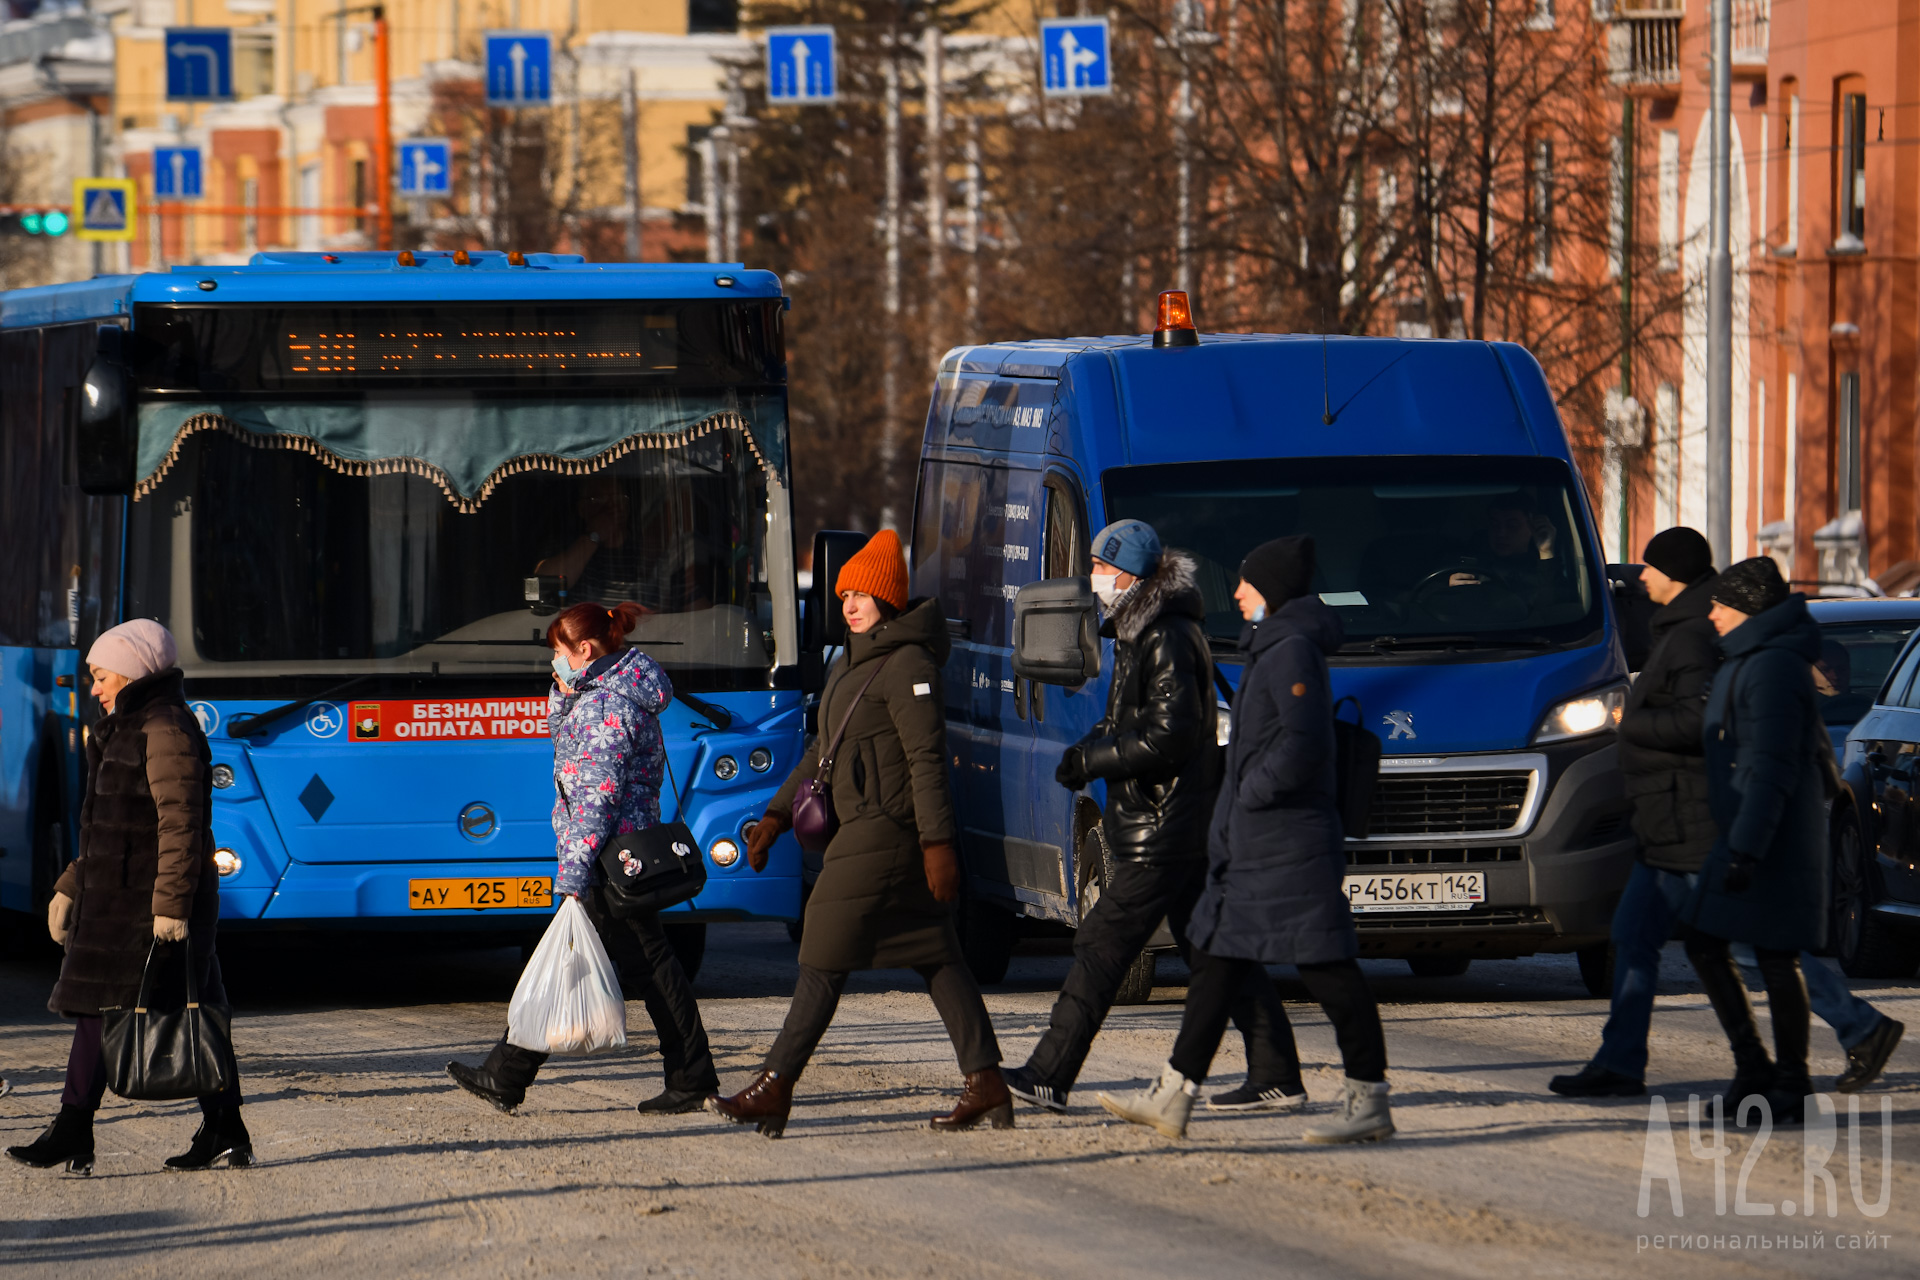 Сергей Цивилёв: сроки завершения транспортной реформы в Кемерове могут быть сдвинуты